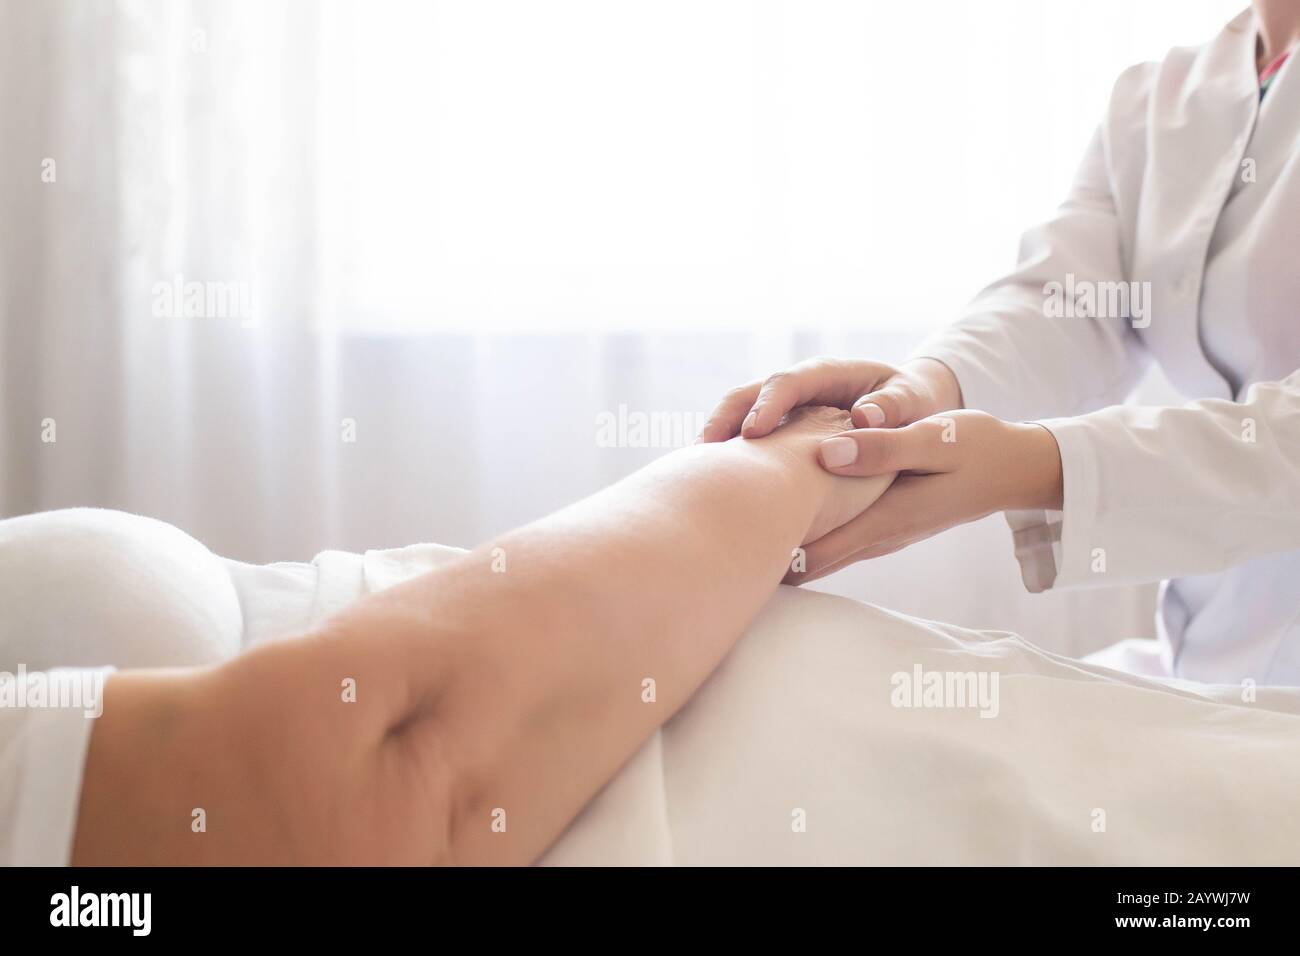 Der Arzt hält die Hand eines Patienten einer älteren Frau auf einem Hintergrund eines Fensters. Konzept der hygienischen Patientenversorgung in einem Krankenhaus, Geriatrie Stockfoto